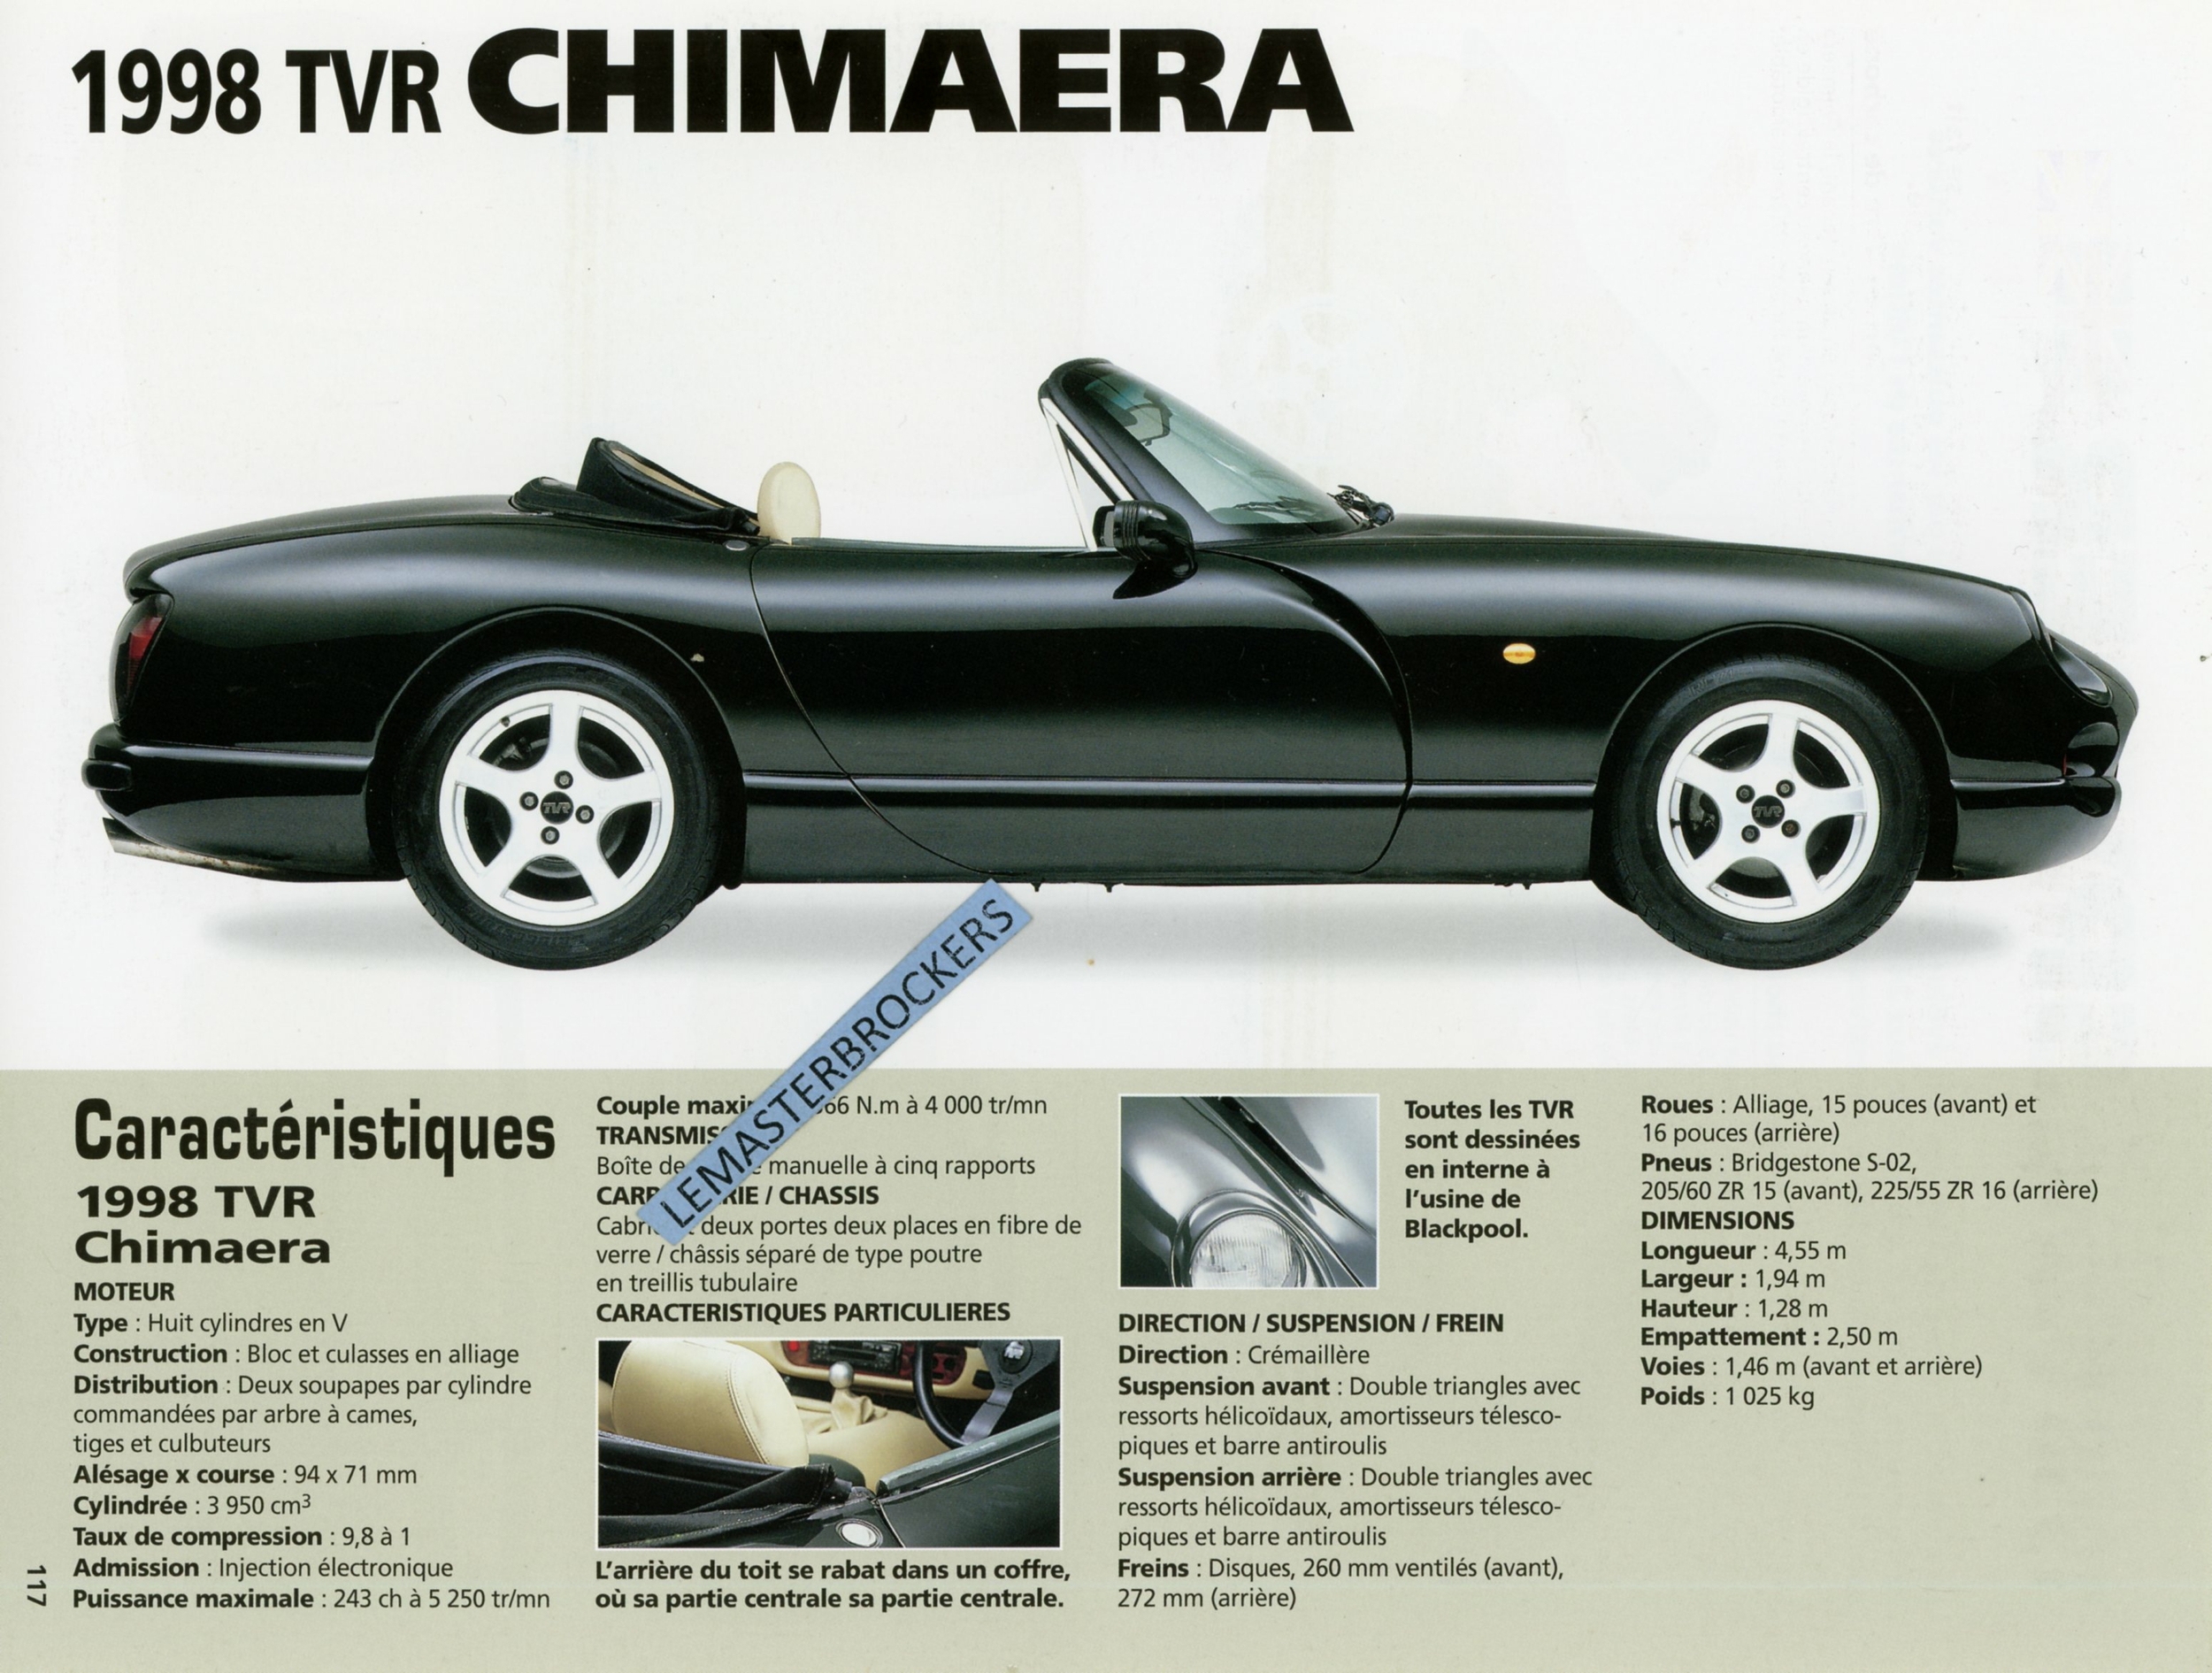 FICHE AUTO TVR CHIMAERA 1998 - ULTIMA SPYDER 1998